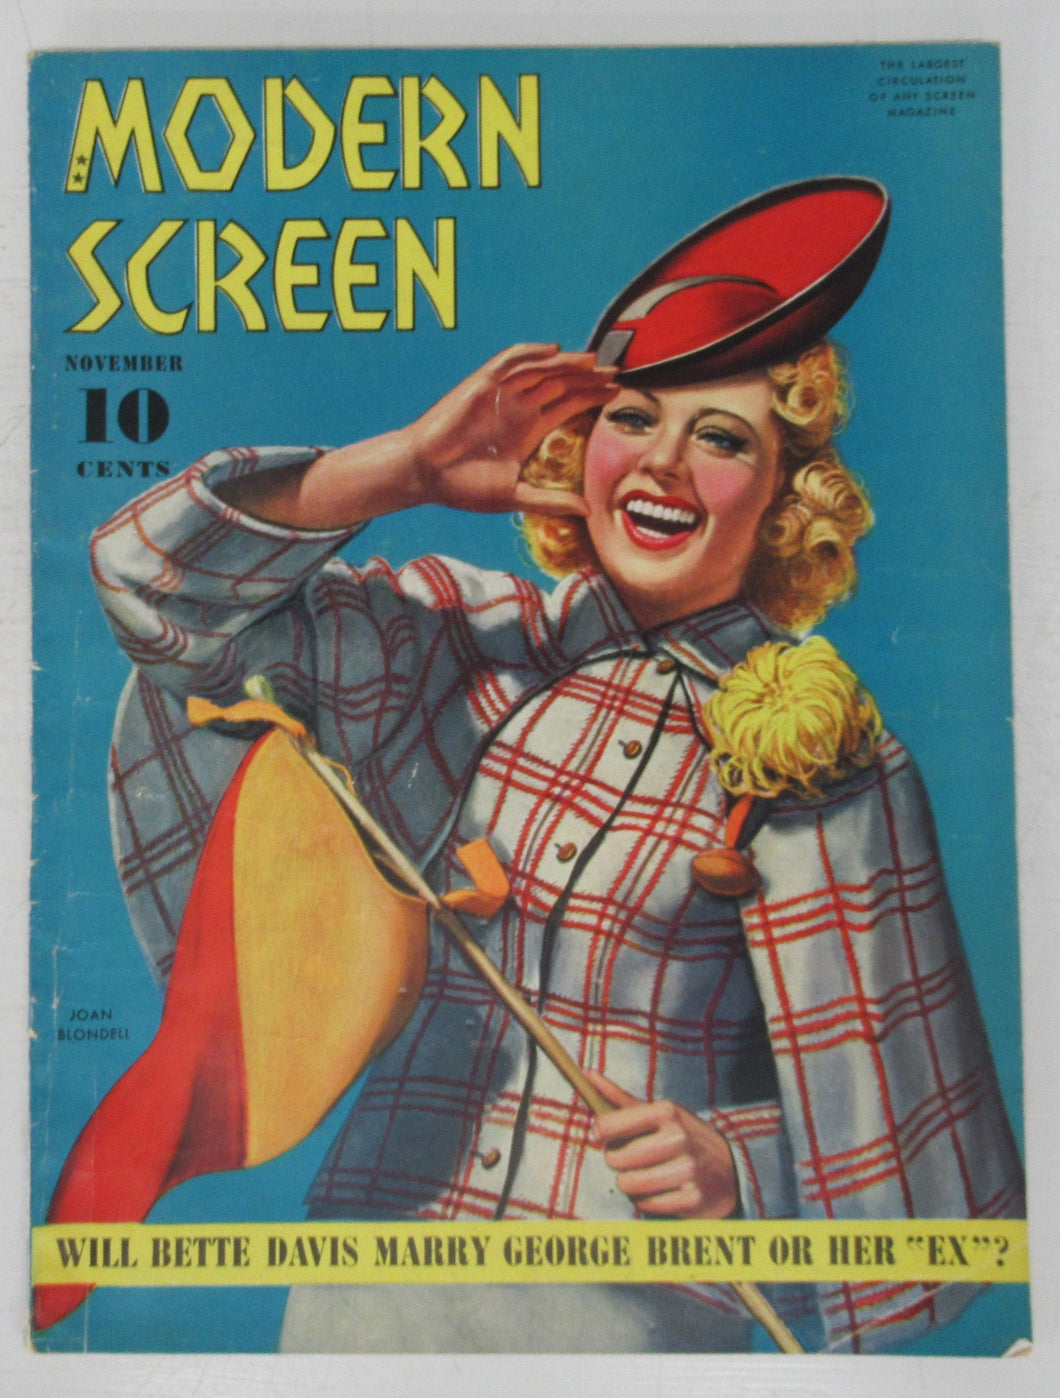 Modern Screen, November 1939